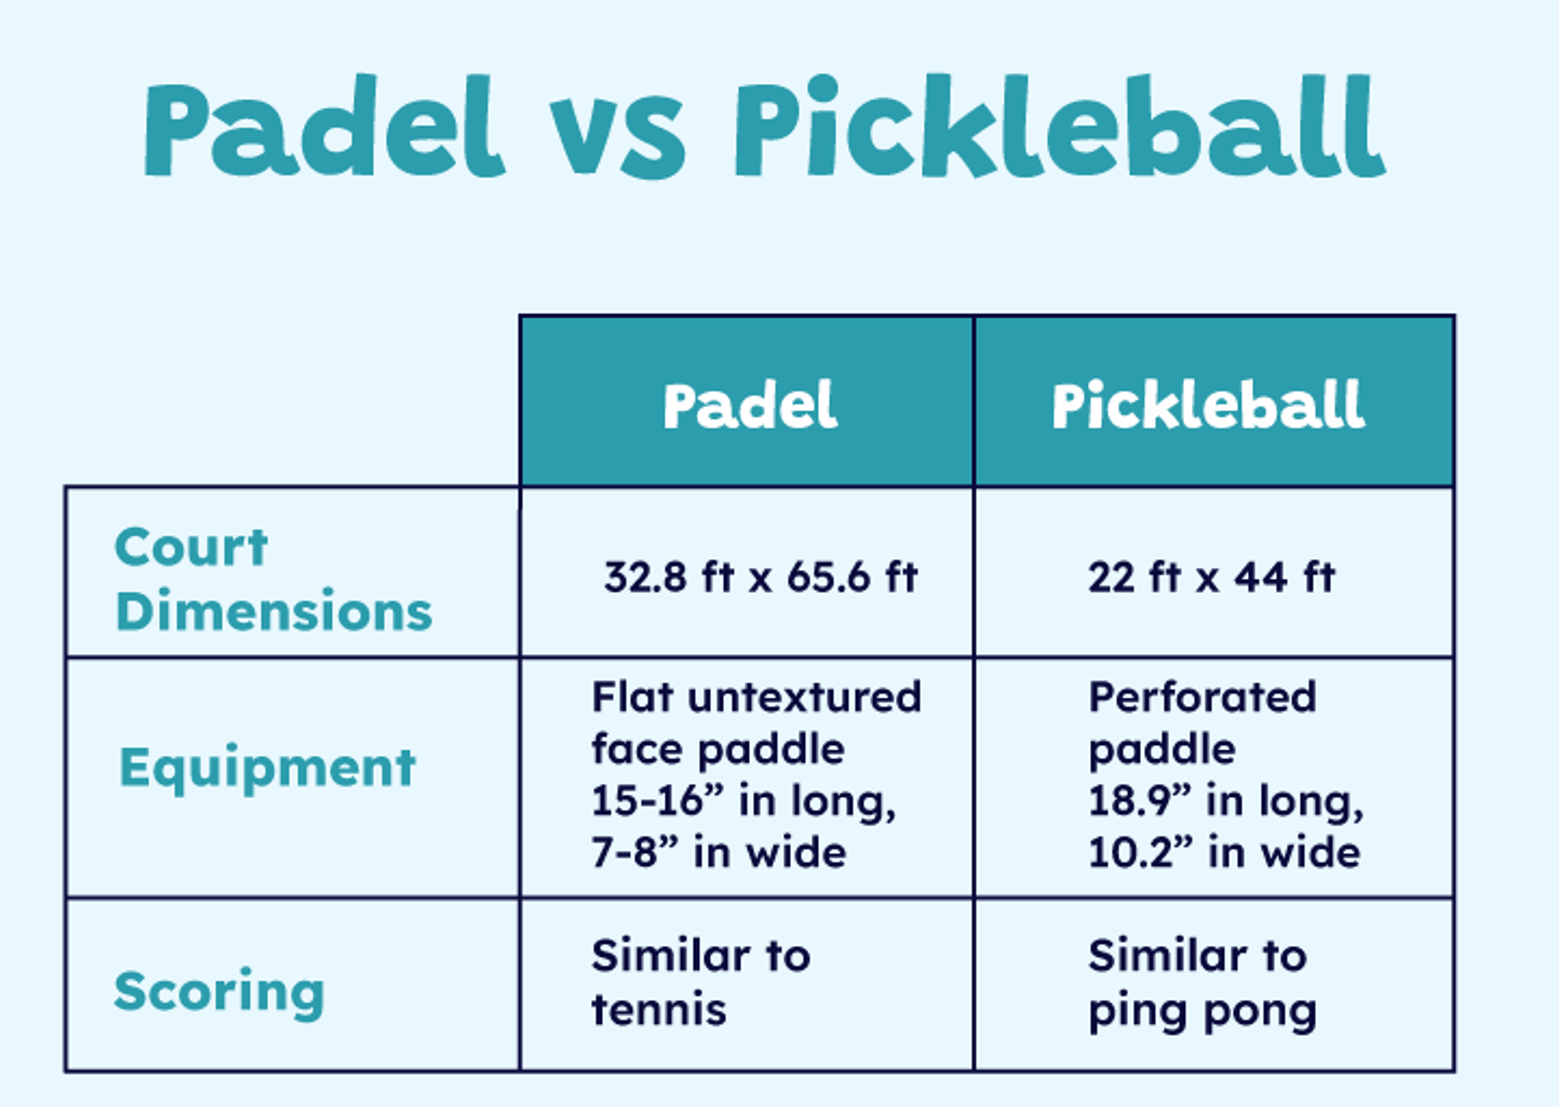 Paddleball vs pickleball